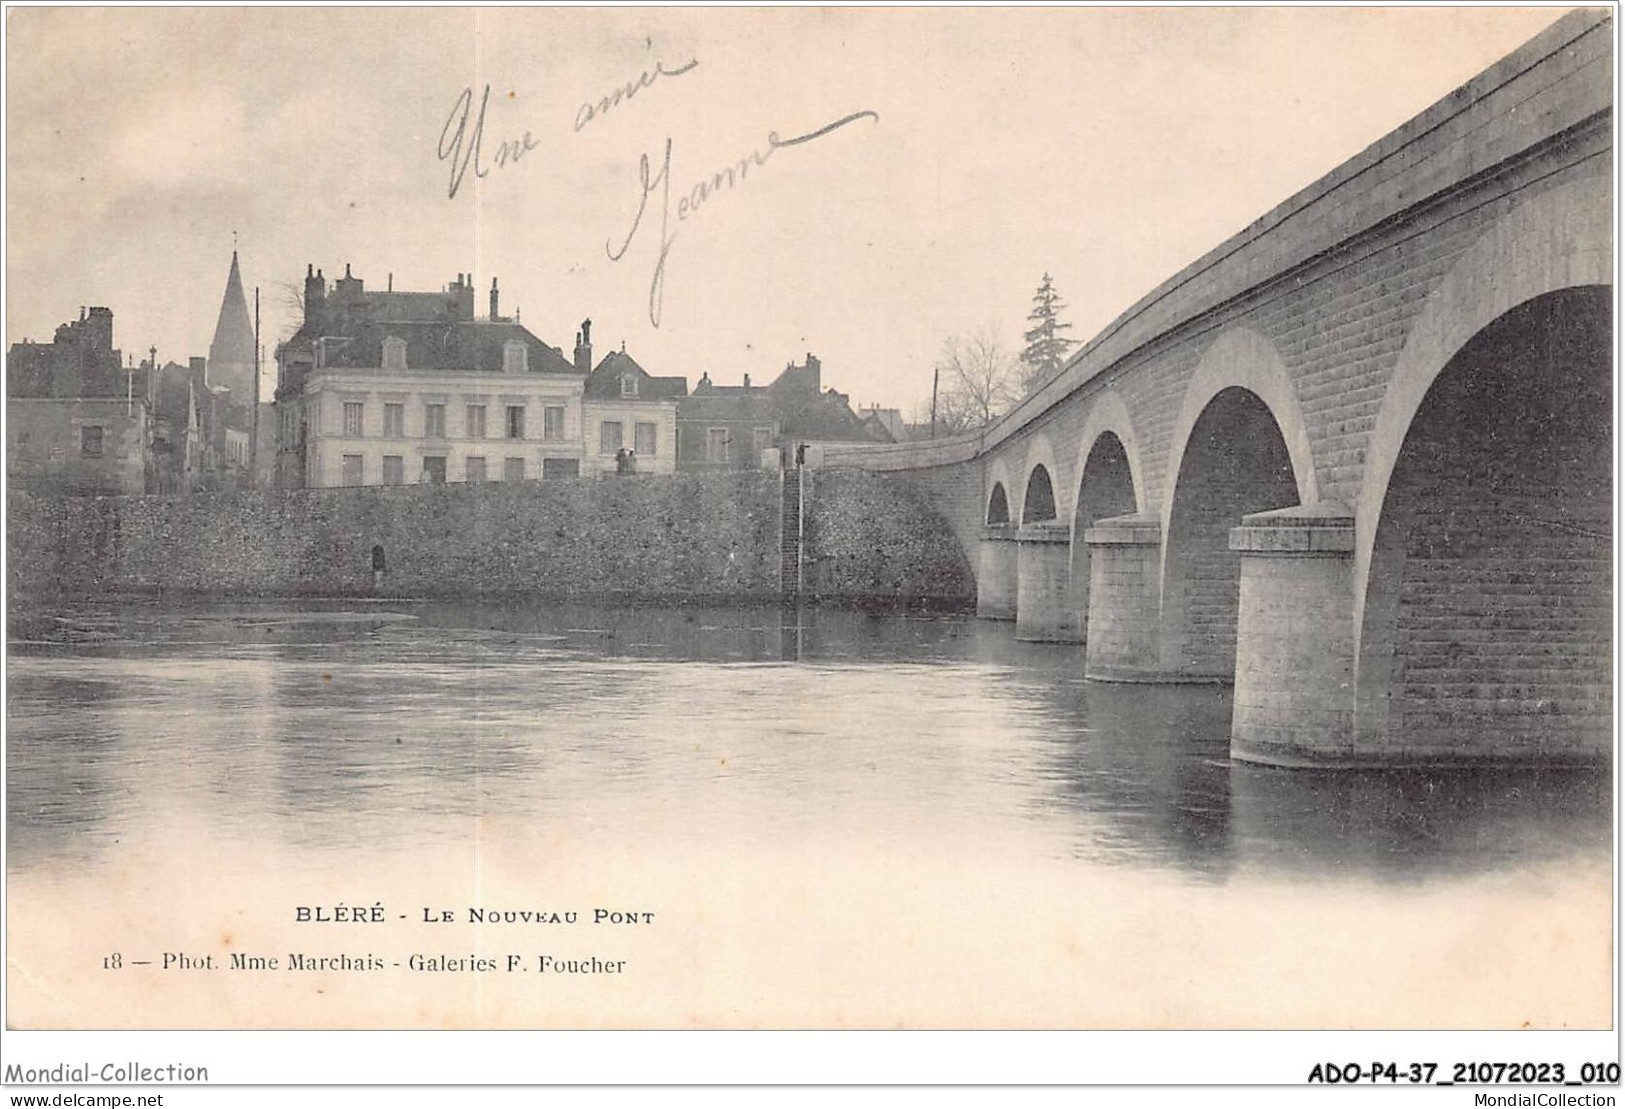 ADOP4-37-0307 - BLERE - Le Nouveau Pont - Bléré